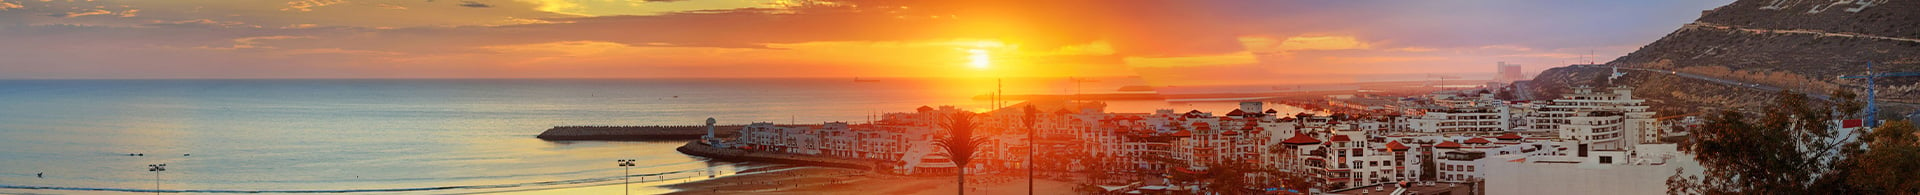 Agadir, Maroc